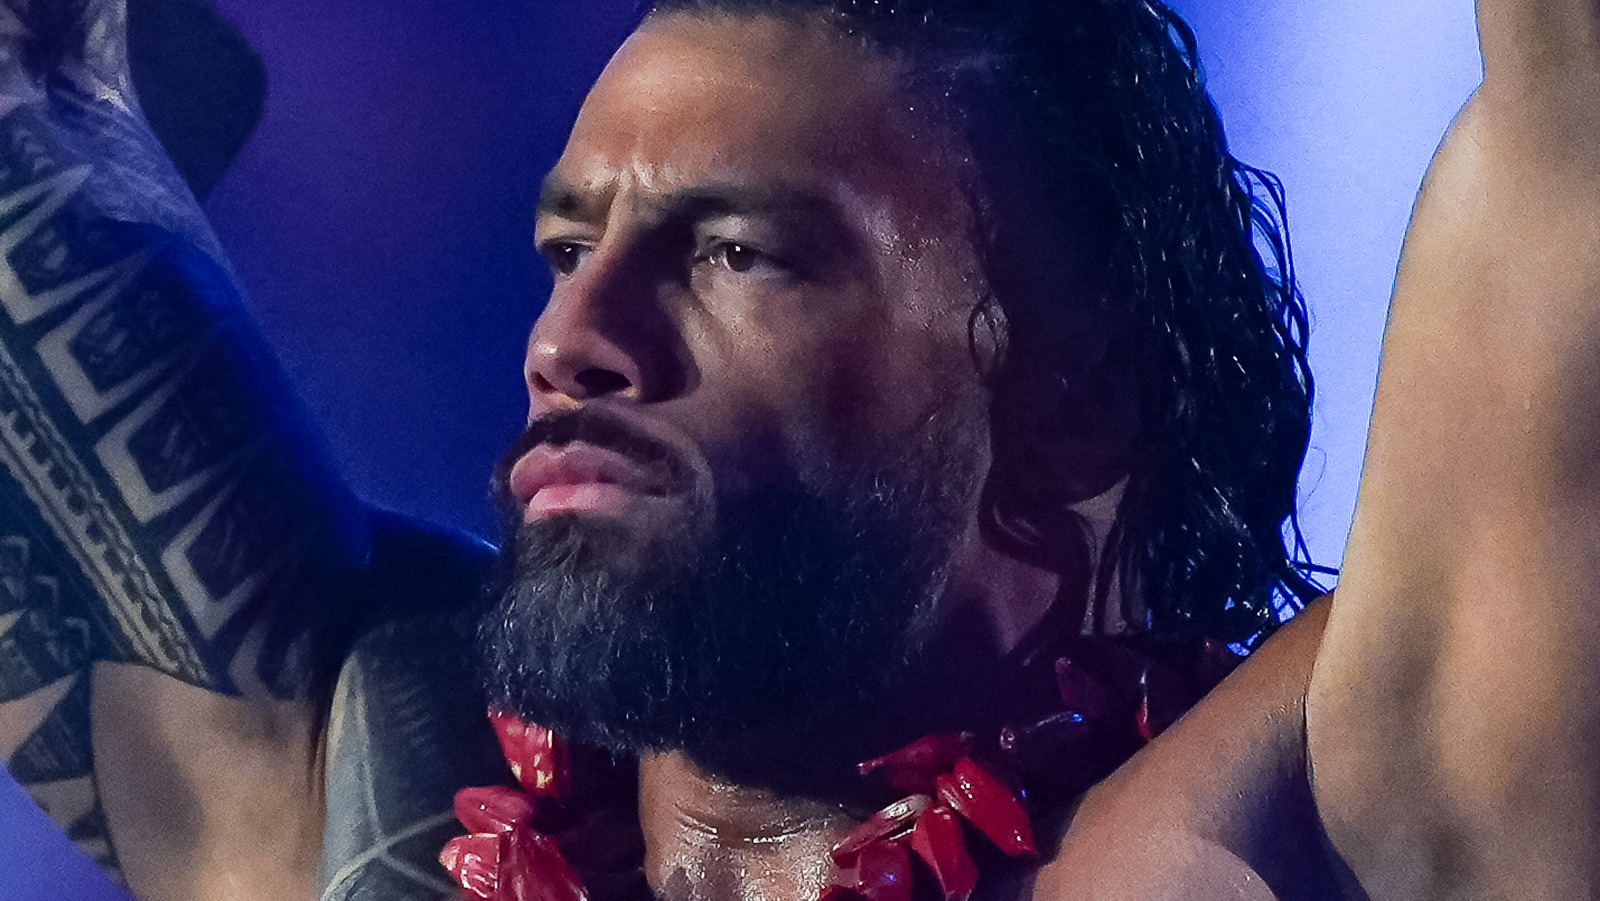 Chavo Guerrero comenta sobre los rumores de la transición de Roman Reigns de WWE a Hollywood